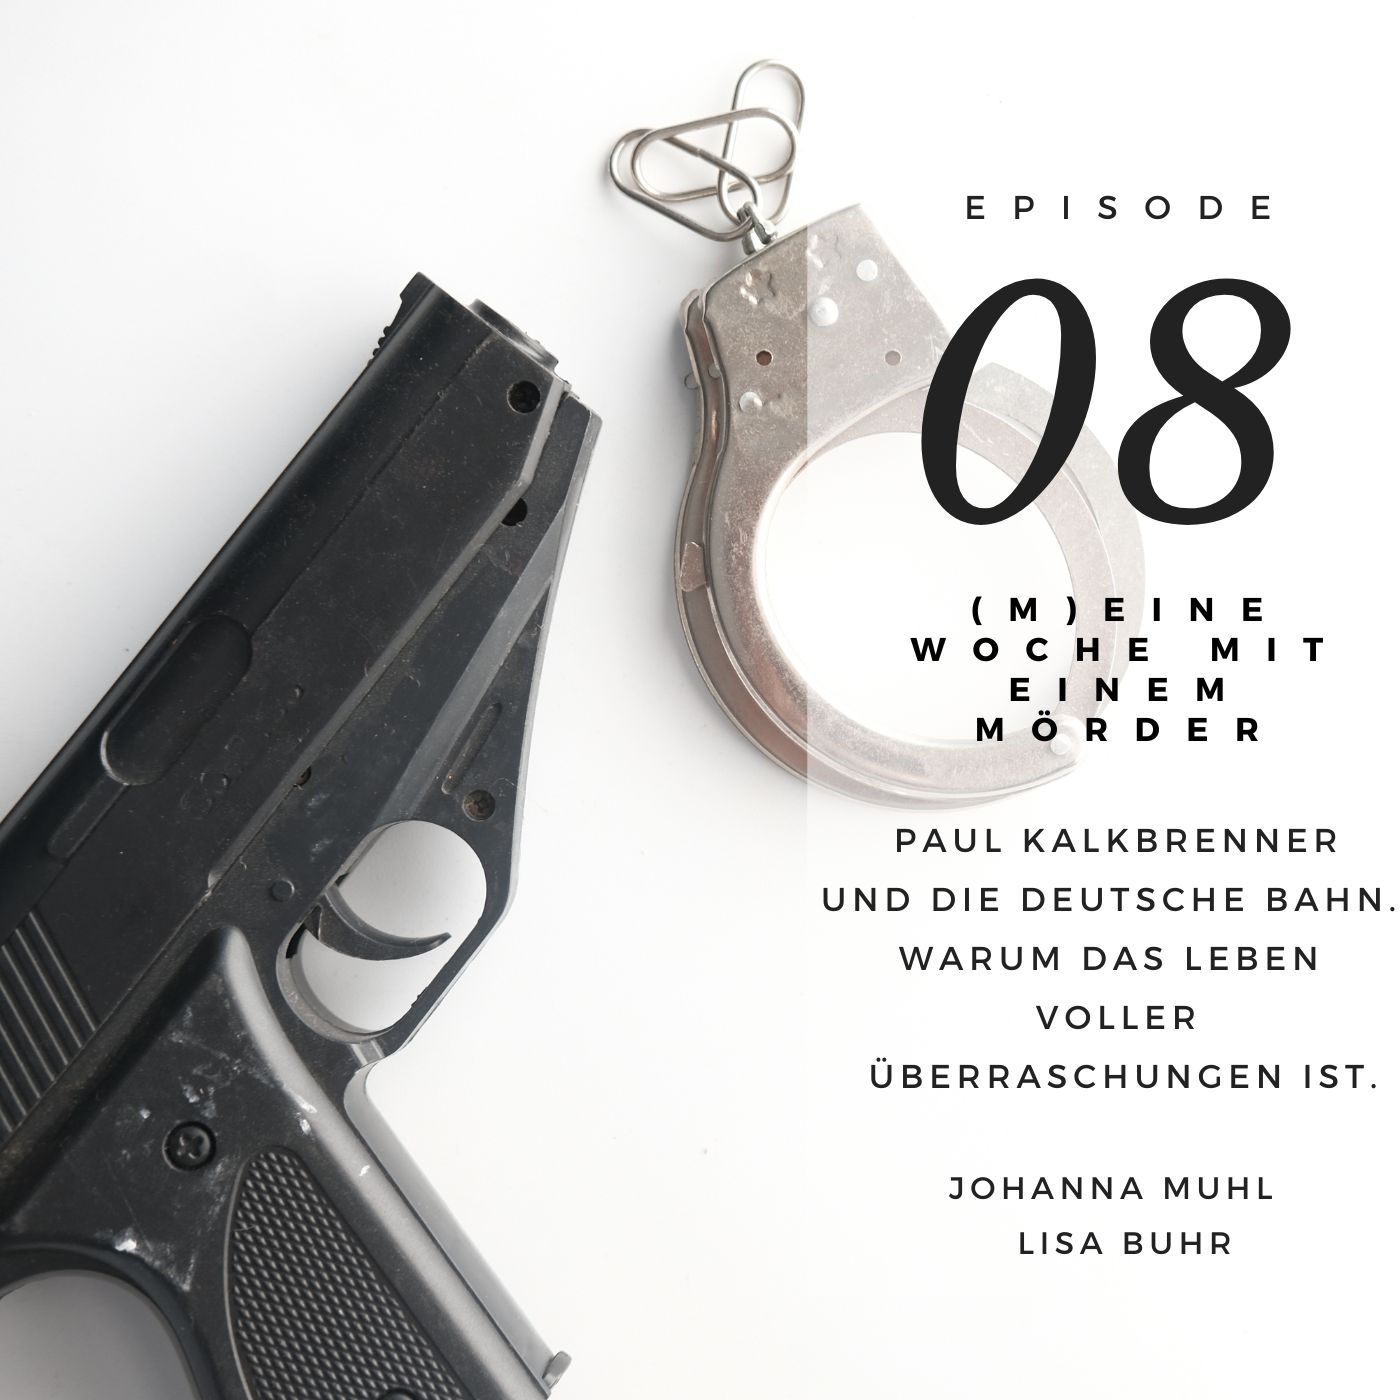 Mord 08 | Paul Kalkbrenner und die deutsche Bahn. Warum das Leben voller Überraschungen ist.